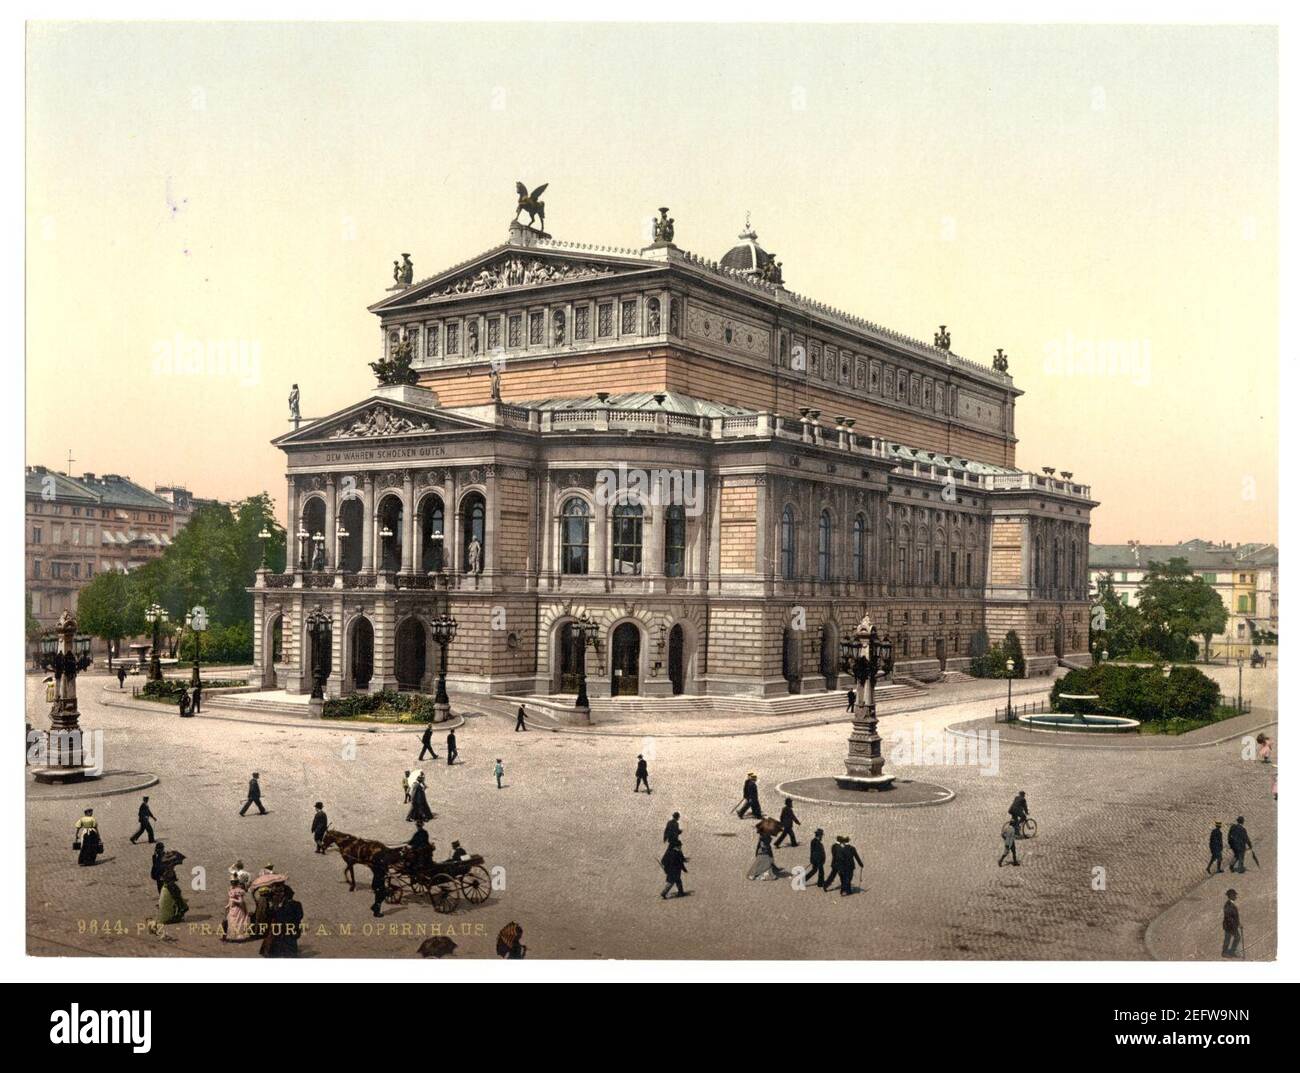 Opéra, Frankfort sur main (c'est-à-dire Francfort-sur-le-main), Allemagne- Banque D'Images